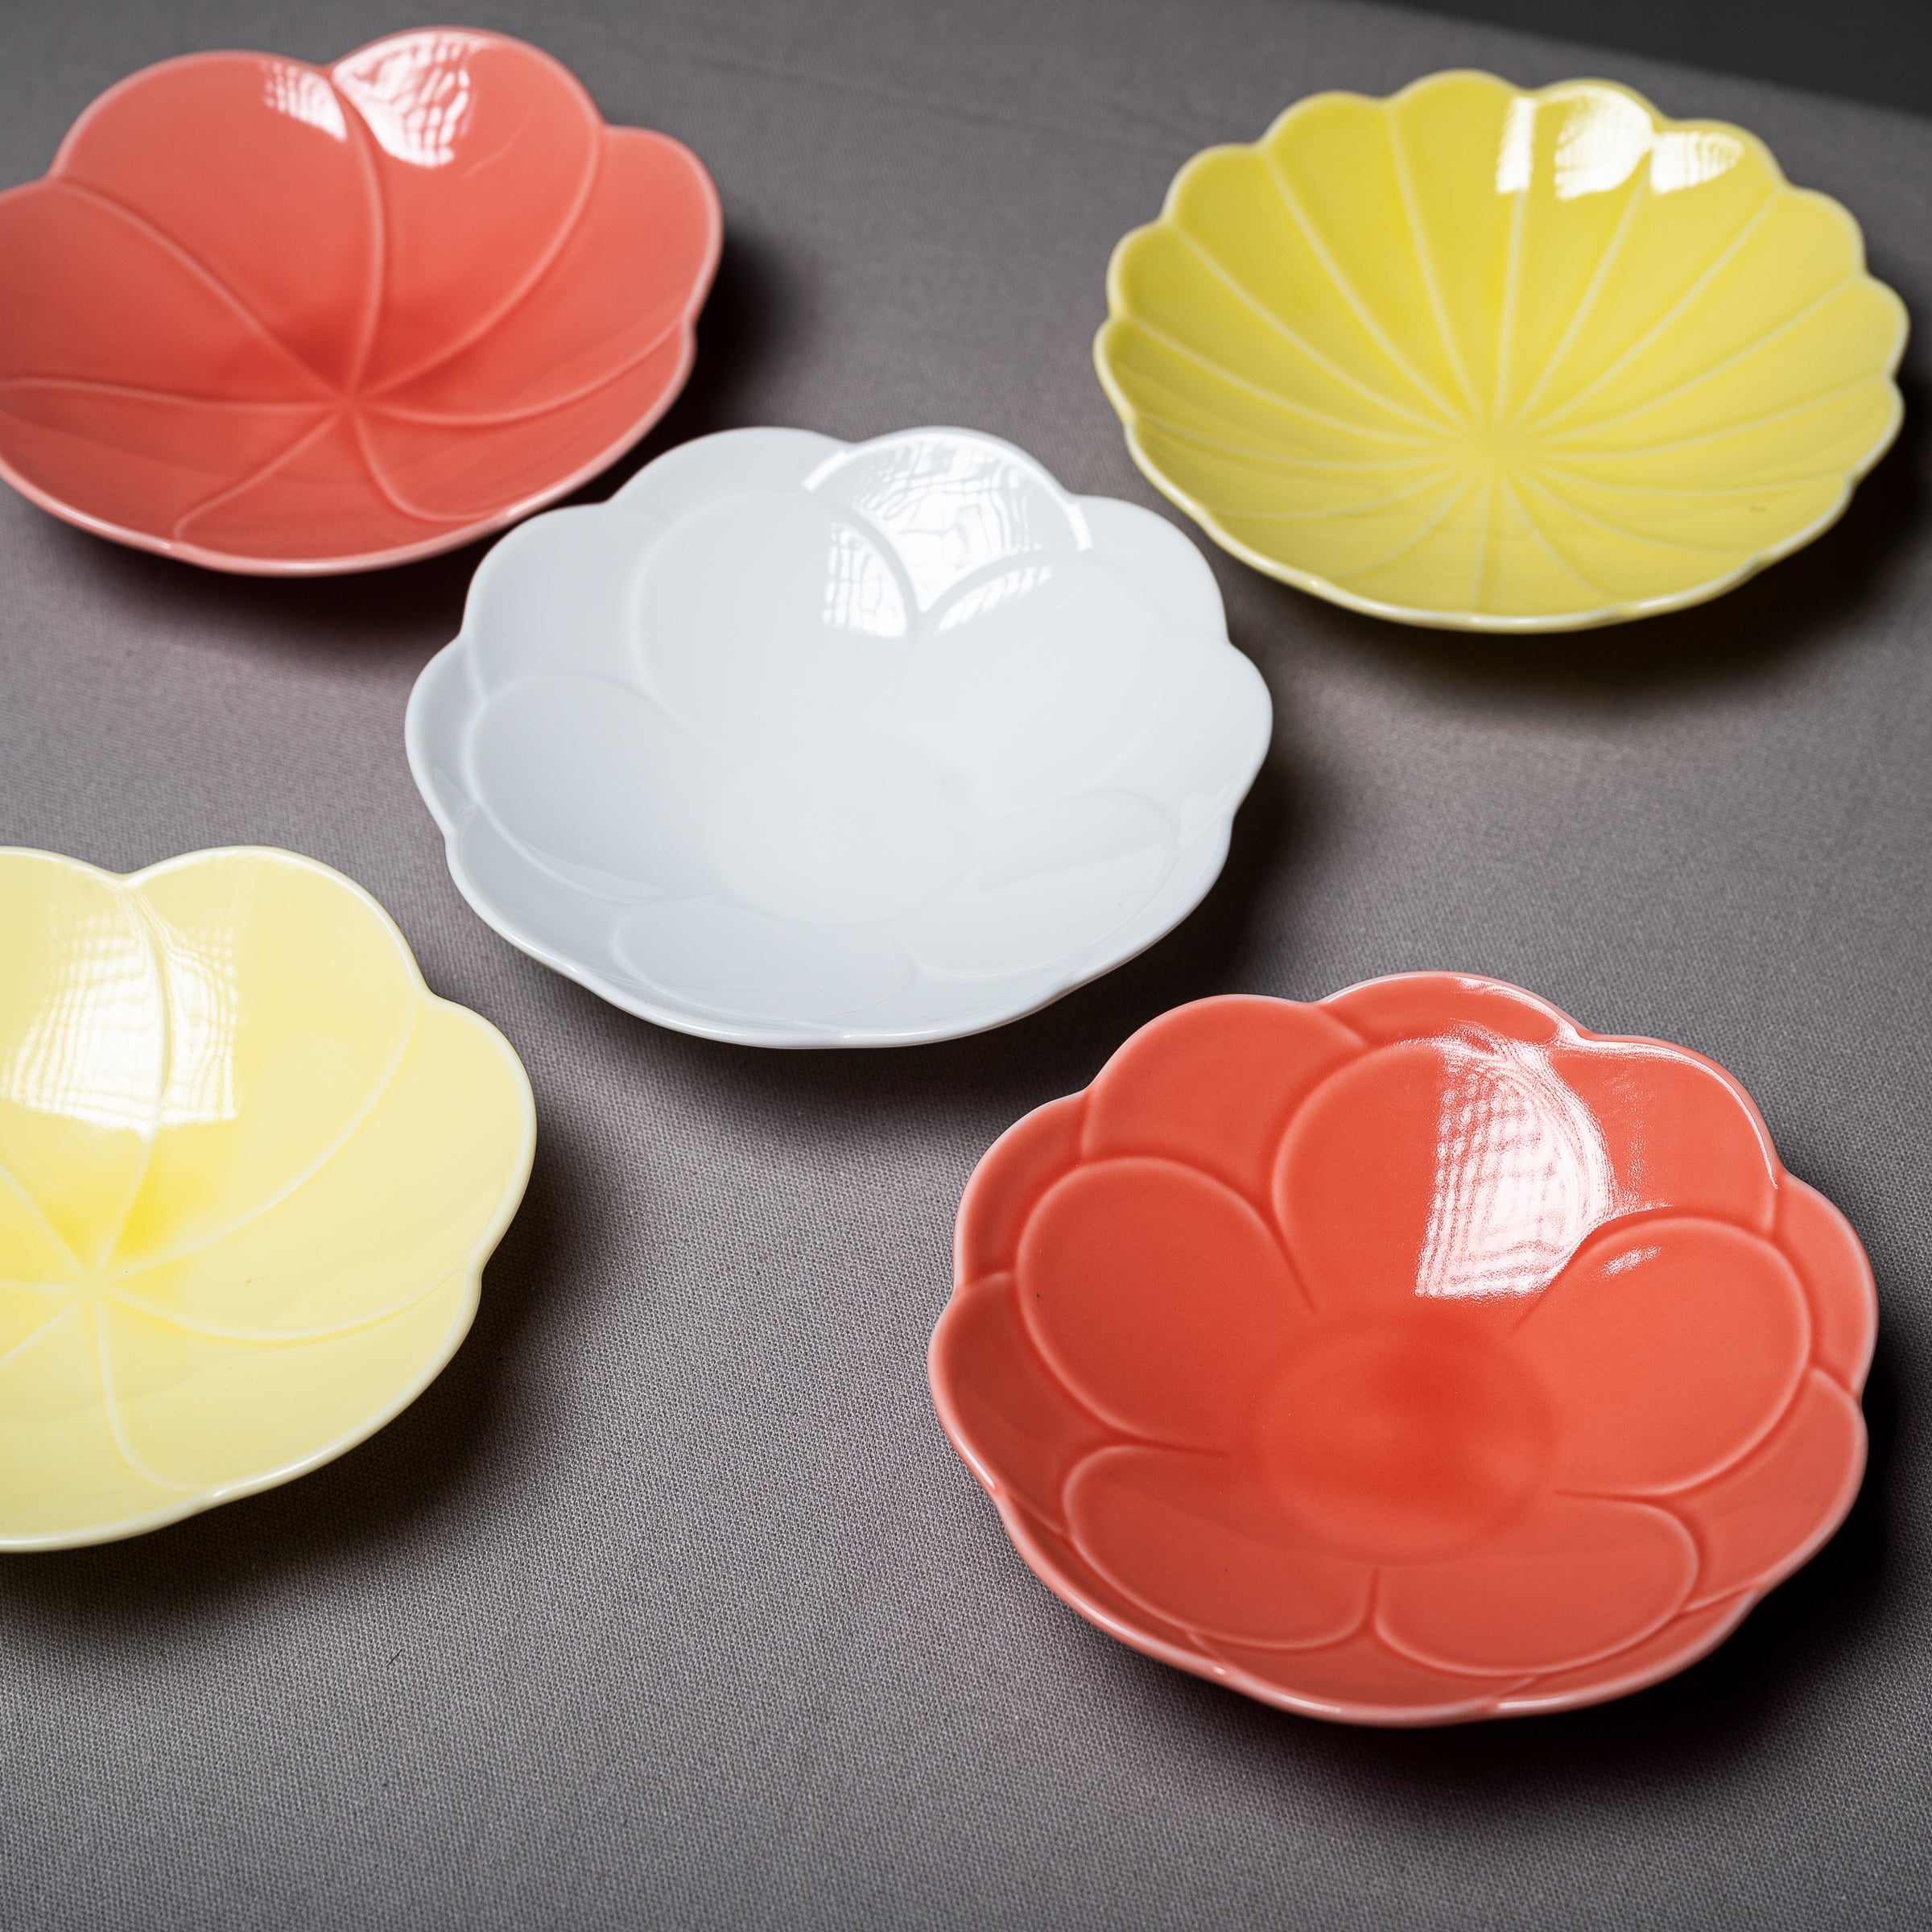 Flower Serving Bowl 15.7 cm - Hollyhock Light Yellow / 小田陶器 コトハナ 立葵